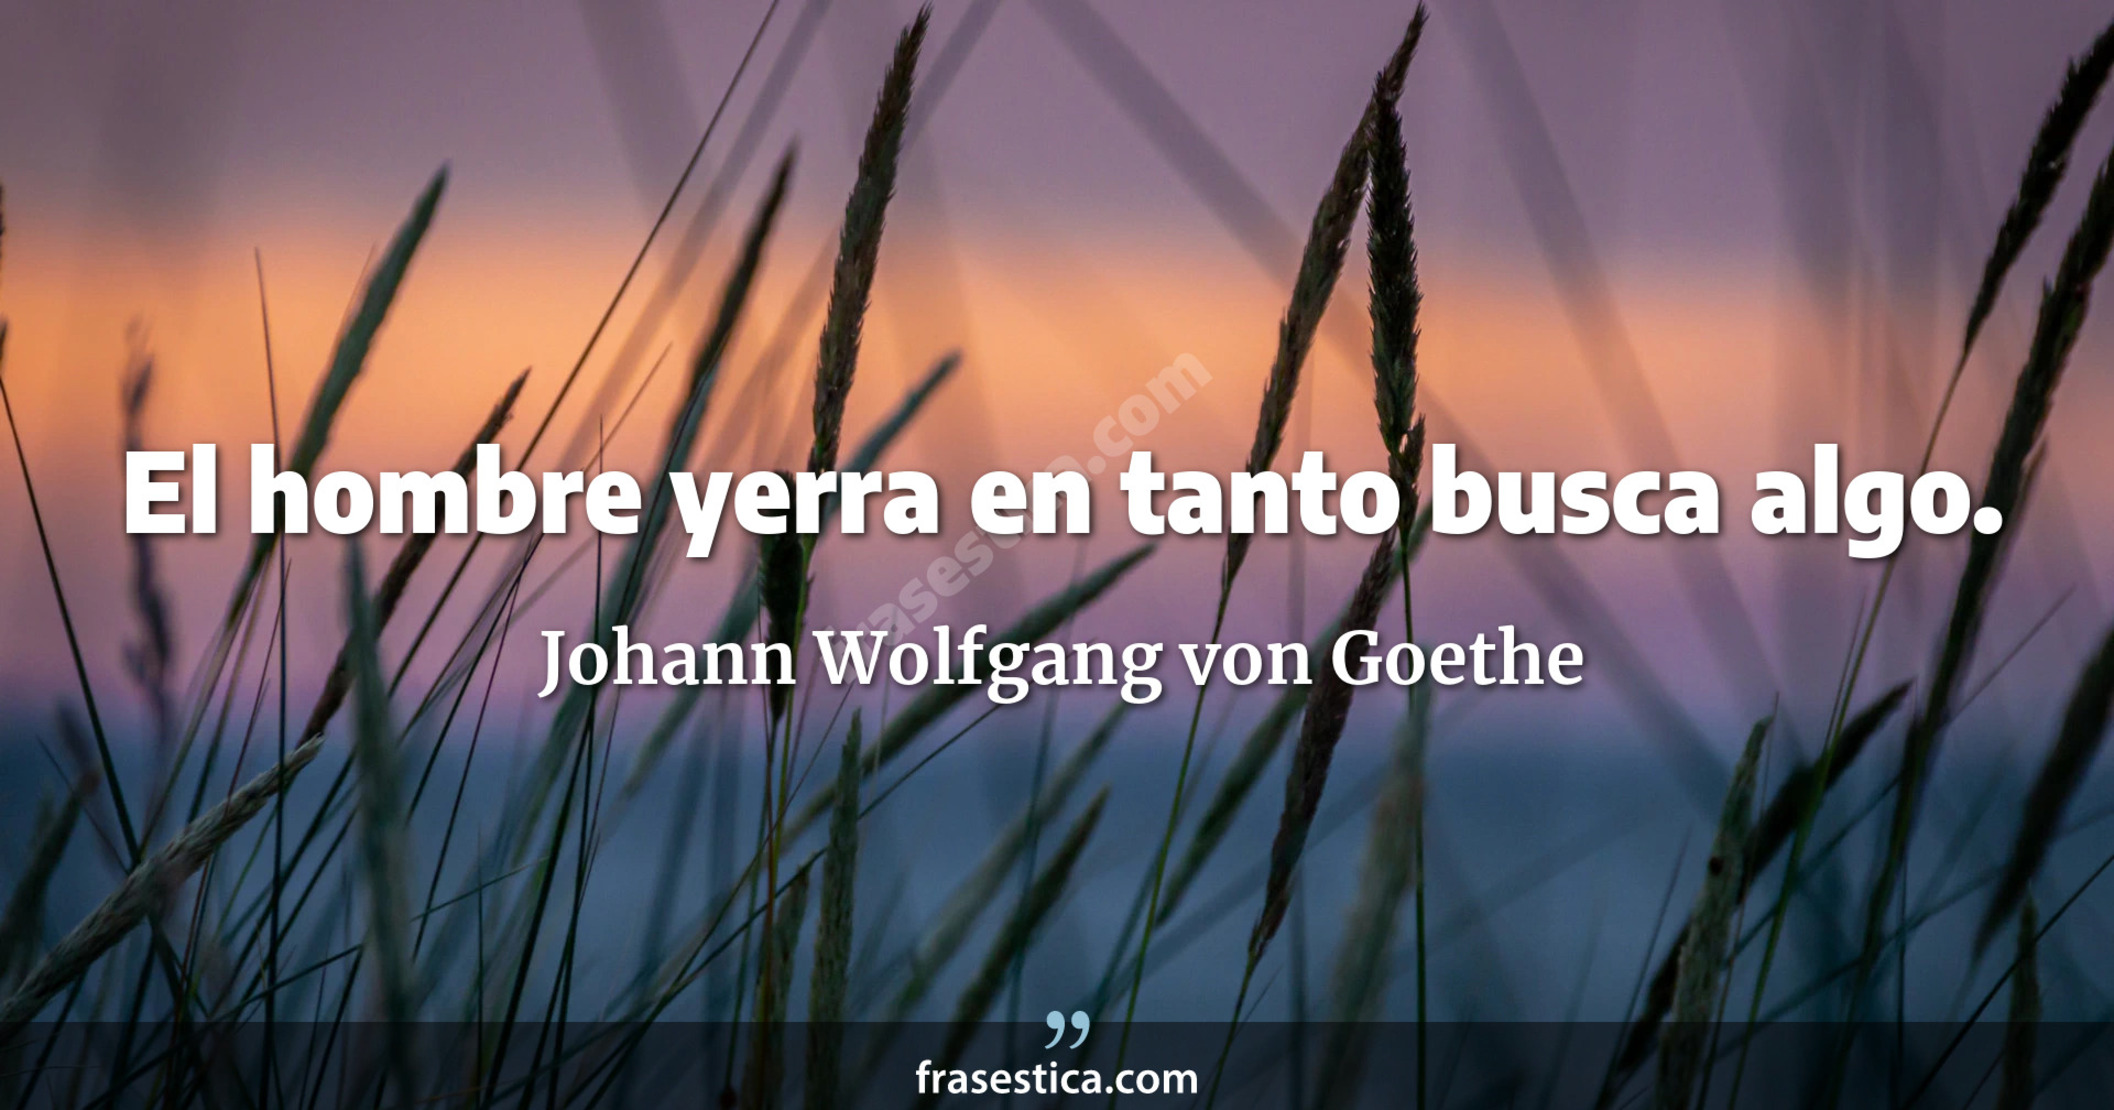 El hombre yerra en tanto busca algo. - Johann Wolfgang von Goethe